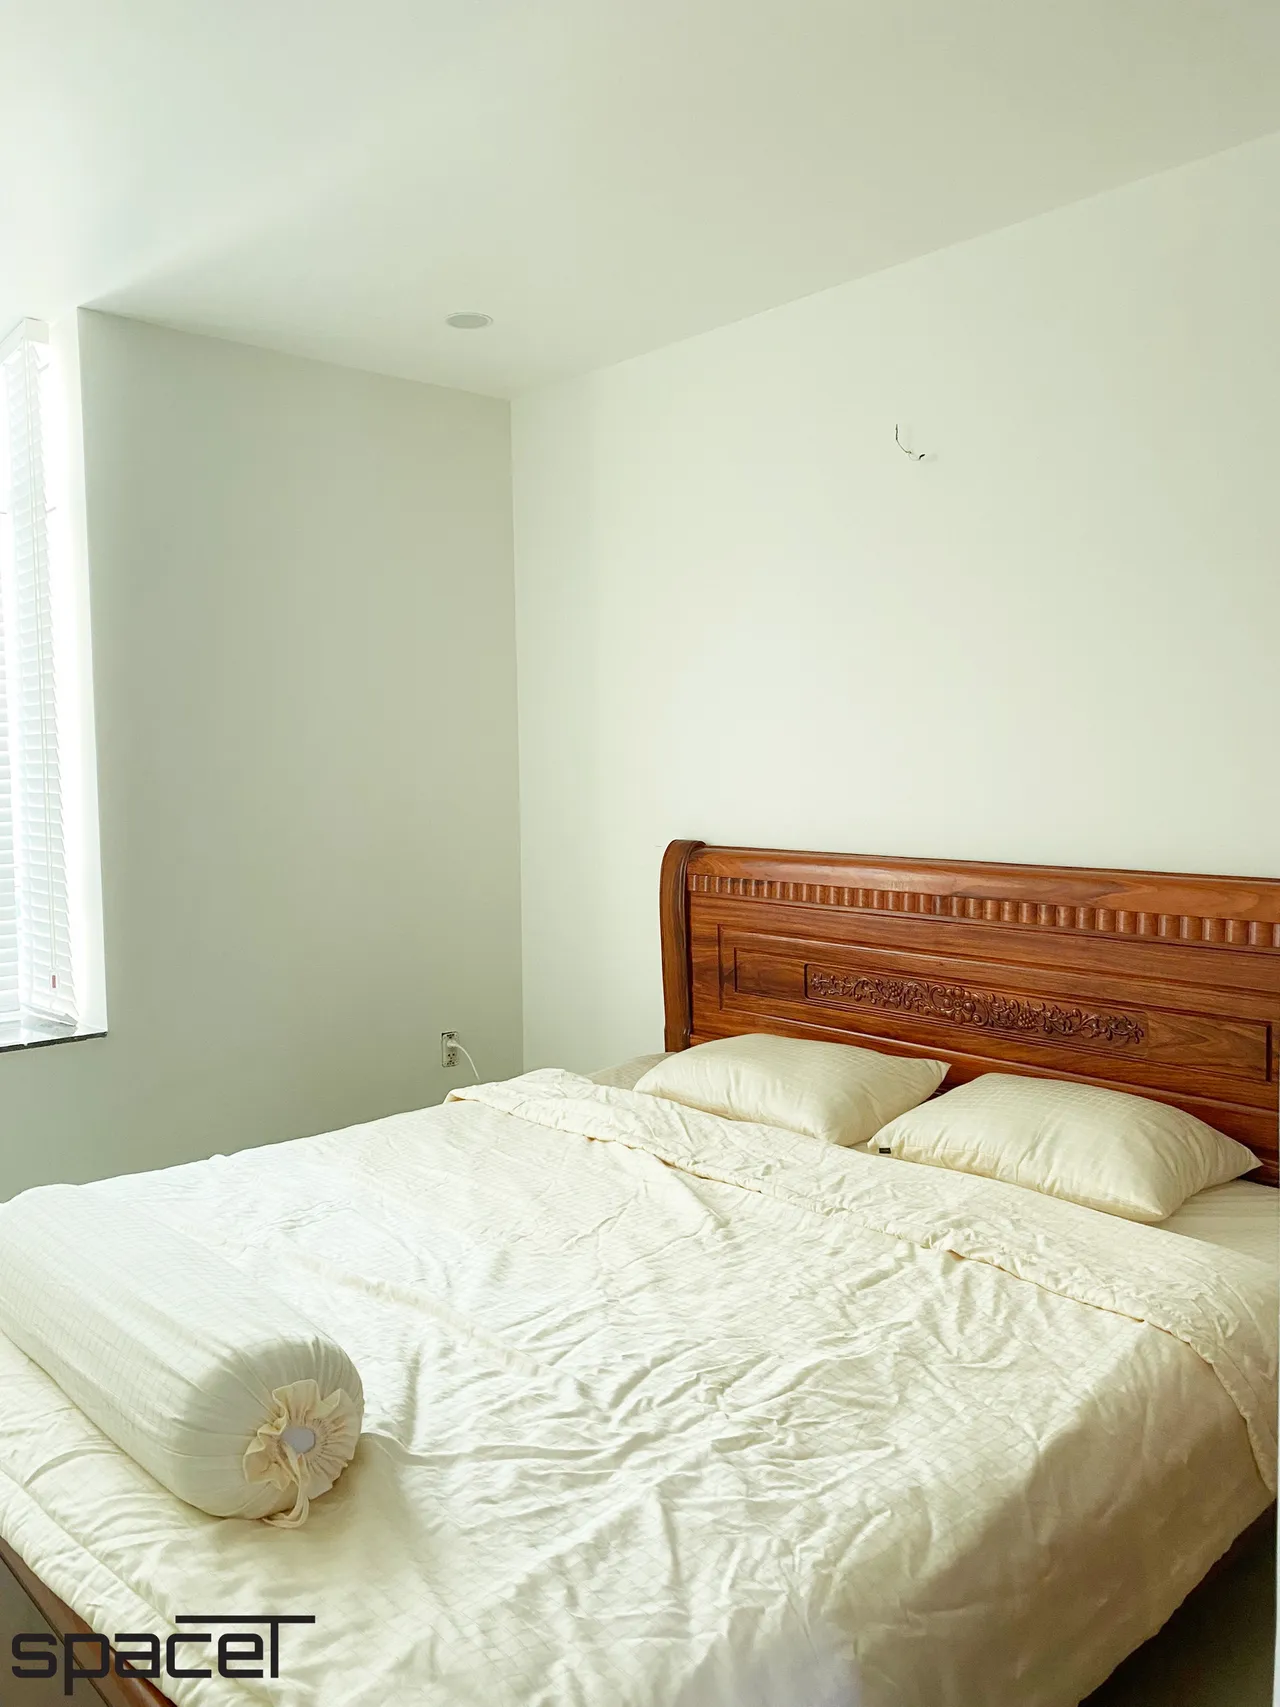  Phòng ngủ - Cải tạo Căn hộ Hoàng Anh Gia Lai 2 - Phong cách Minimalist 